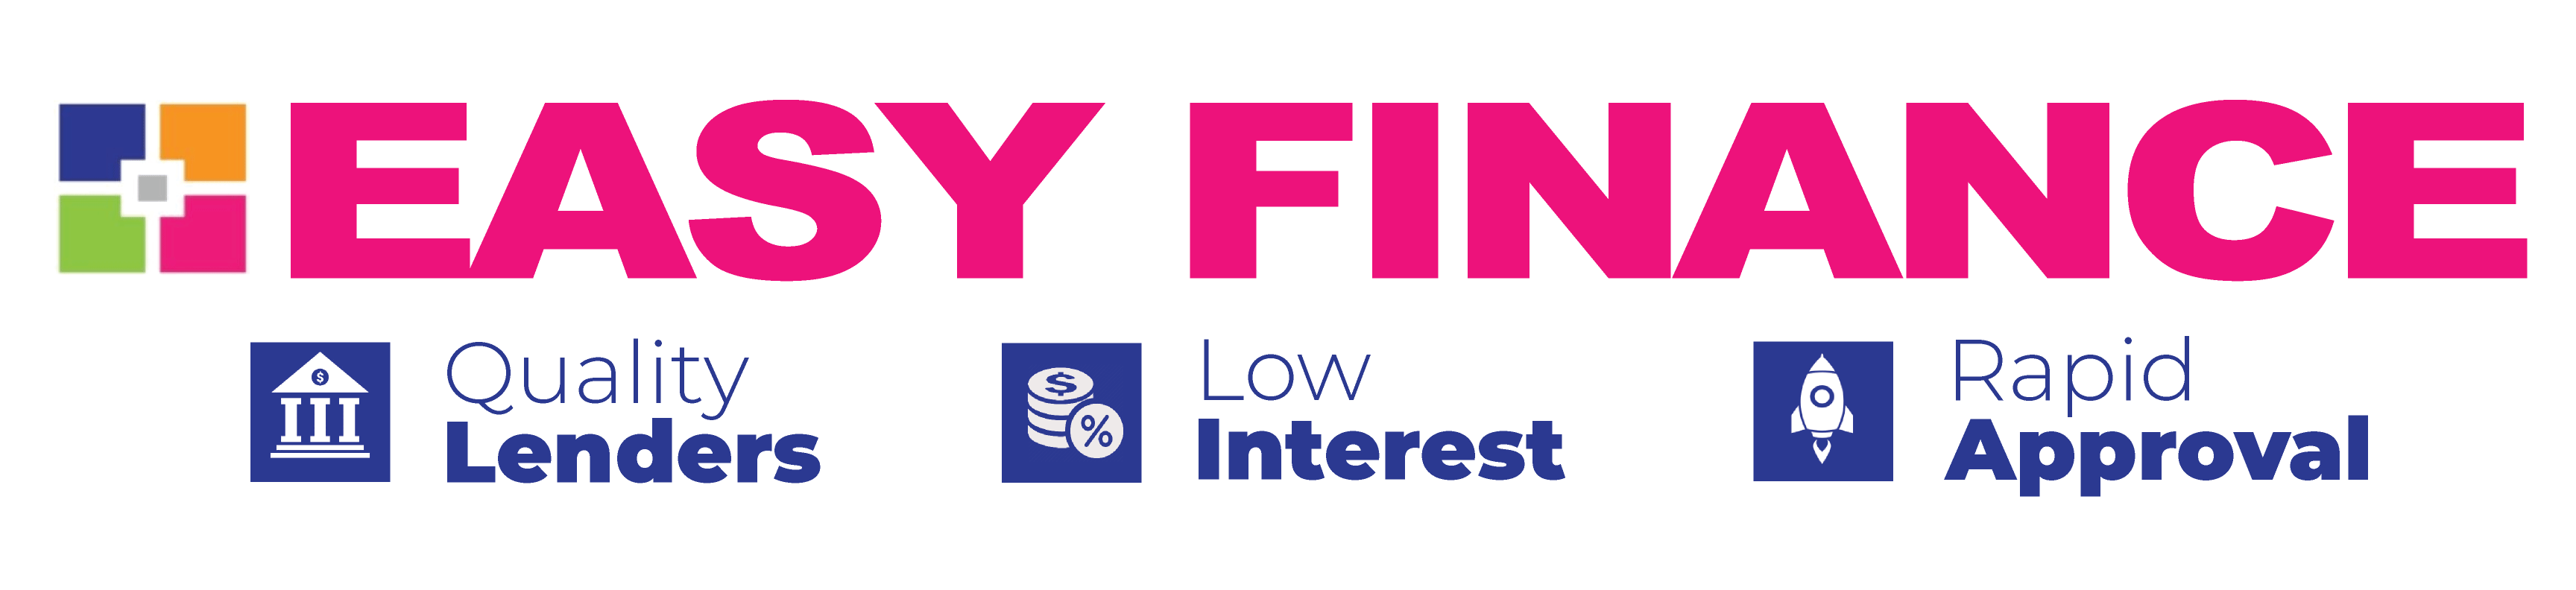 easy-finance-banner-for-web